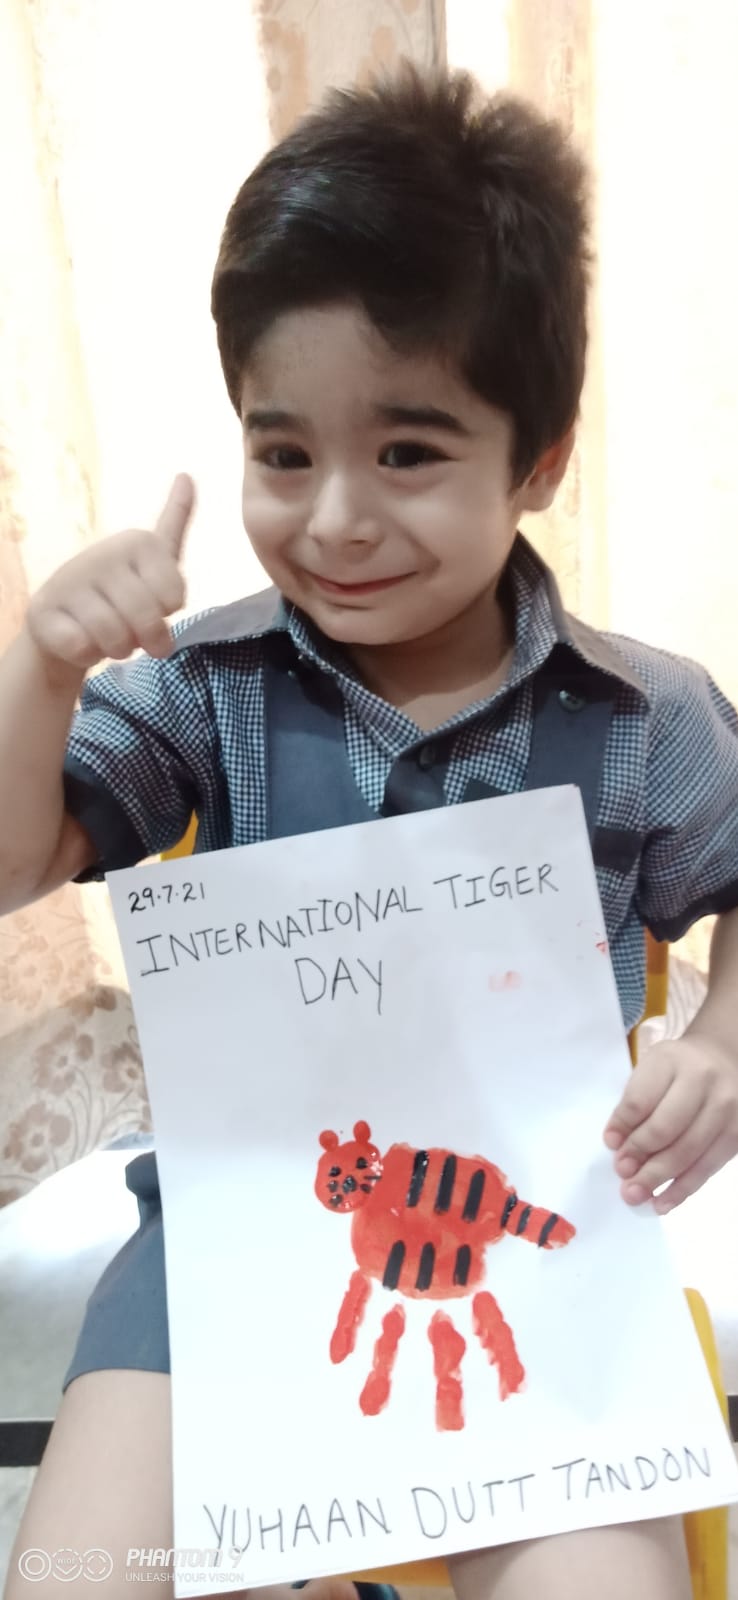 INTERNATIONAL TIGER DAY